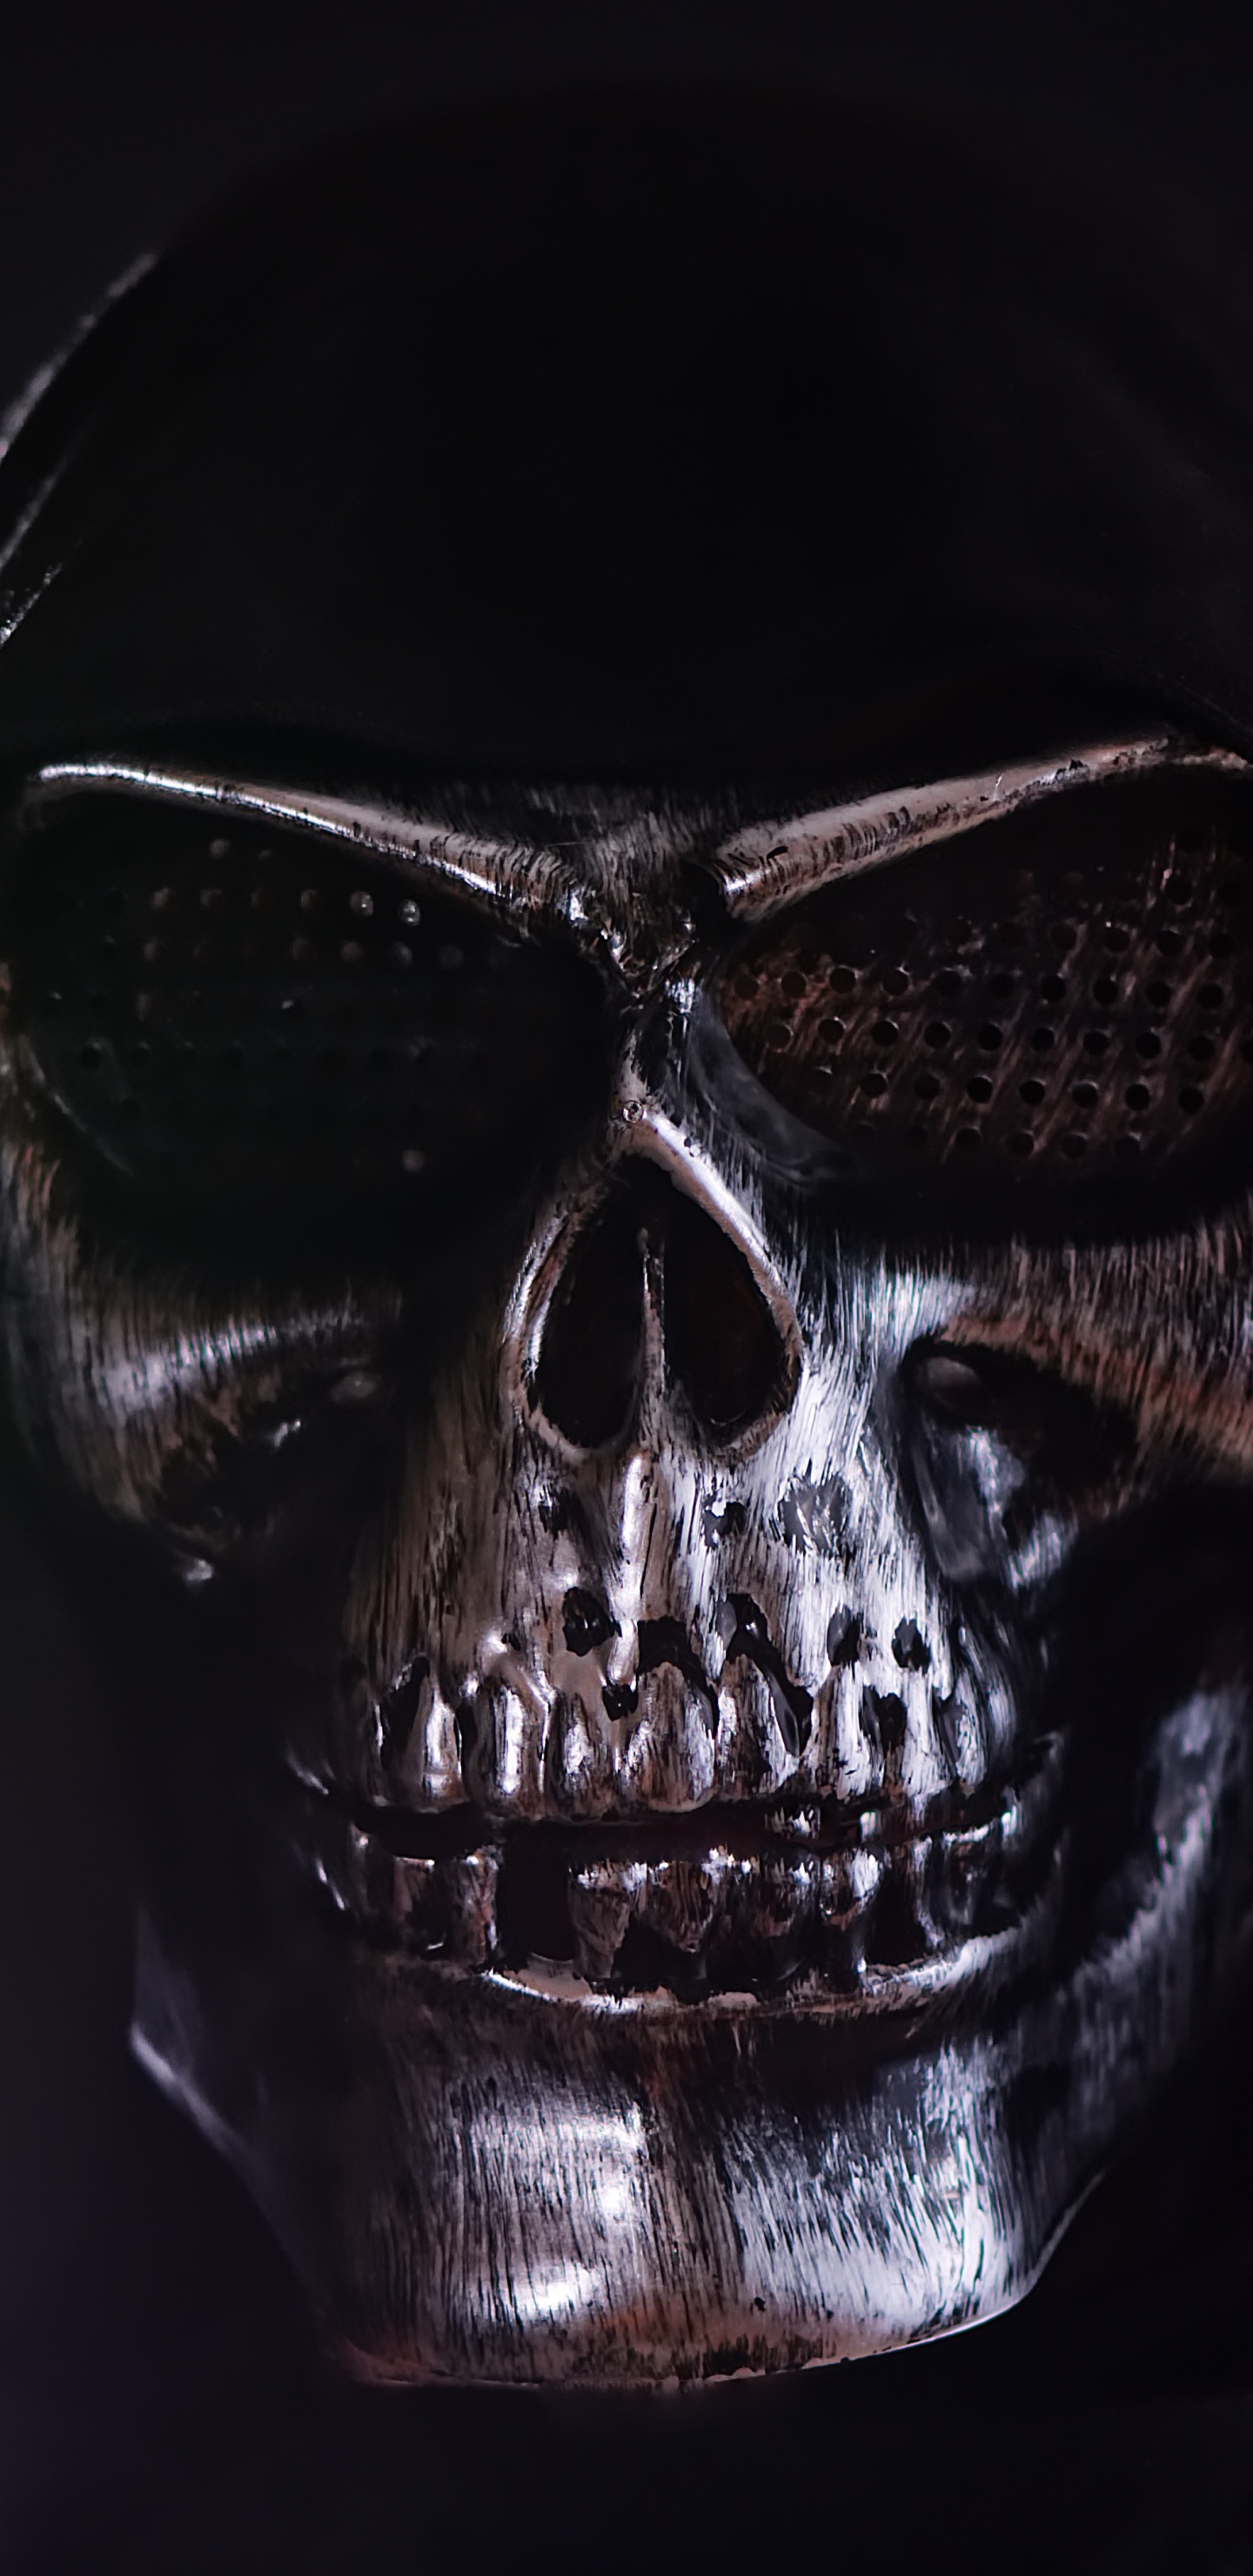 Masque de Crâne Noir et Argent. Wallpaper in 1440x2960 Resolution